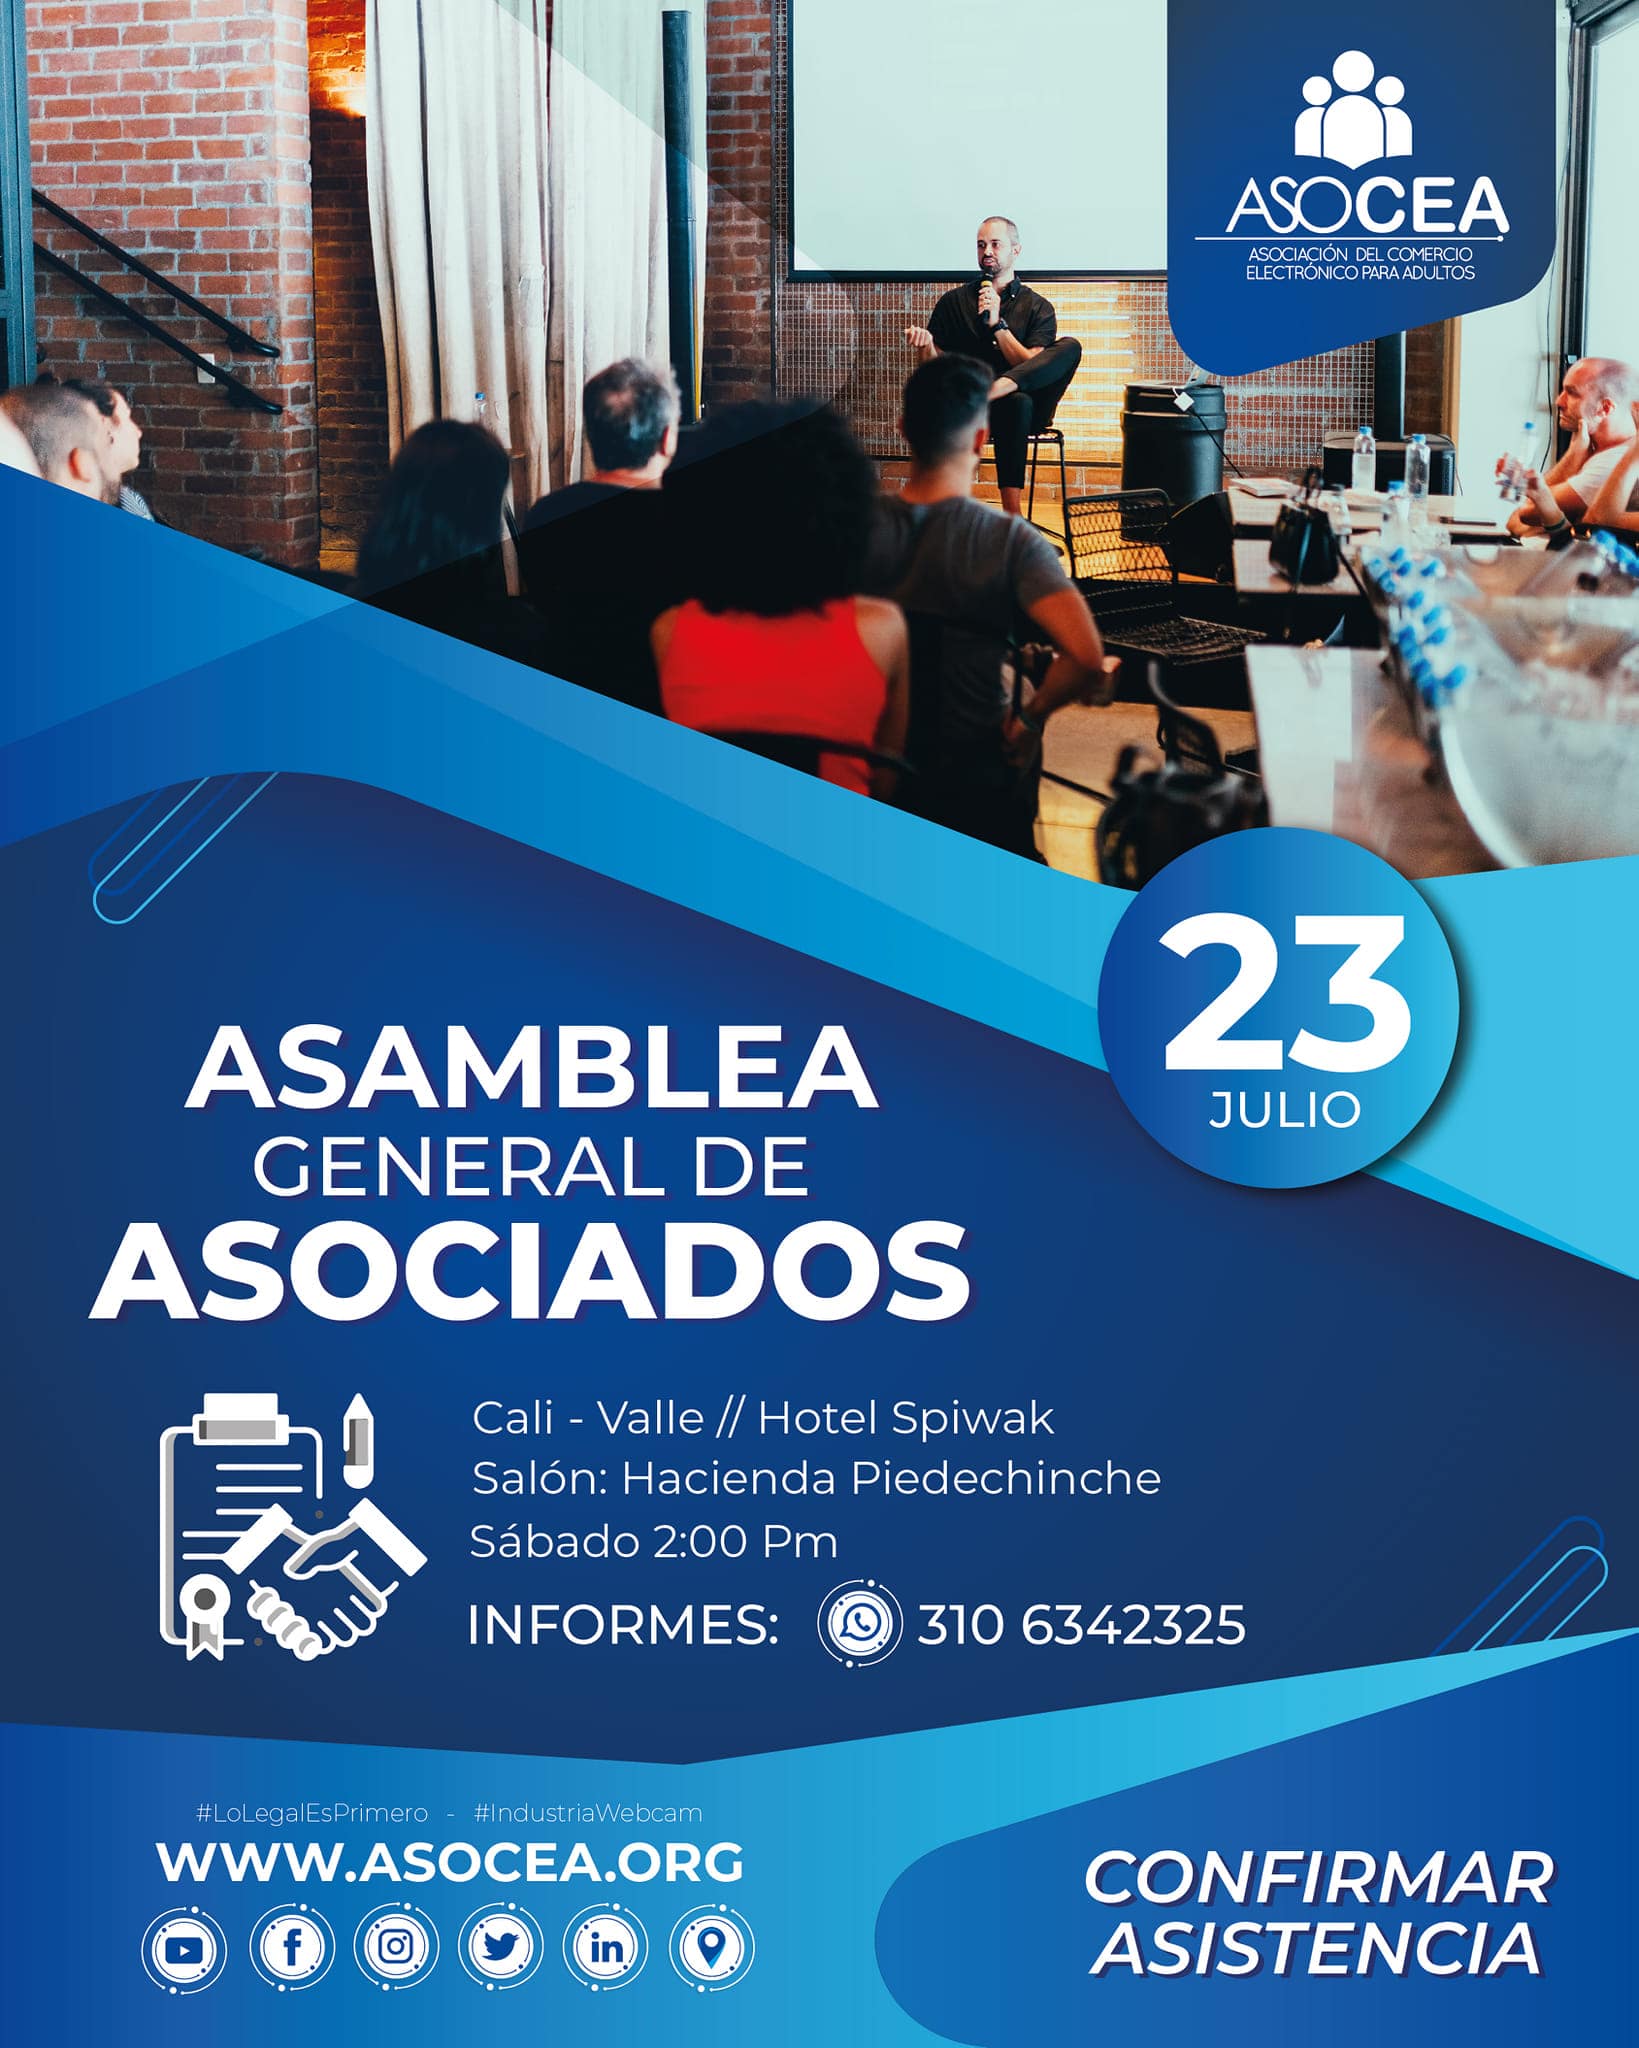 Asamblea General de Asociados ASOCEA FENCEA 2022